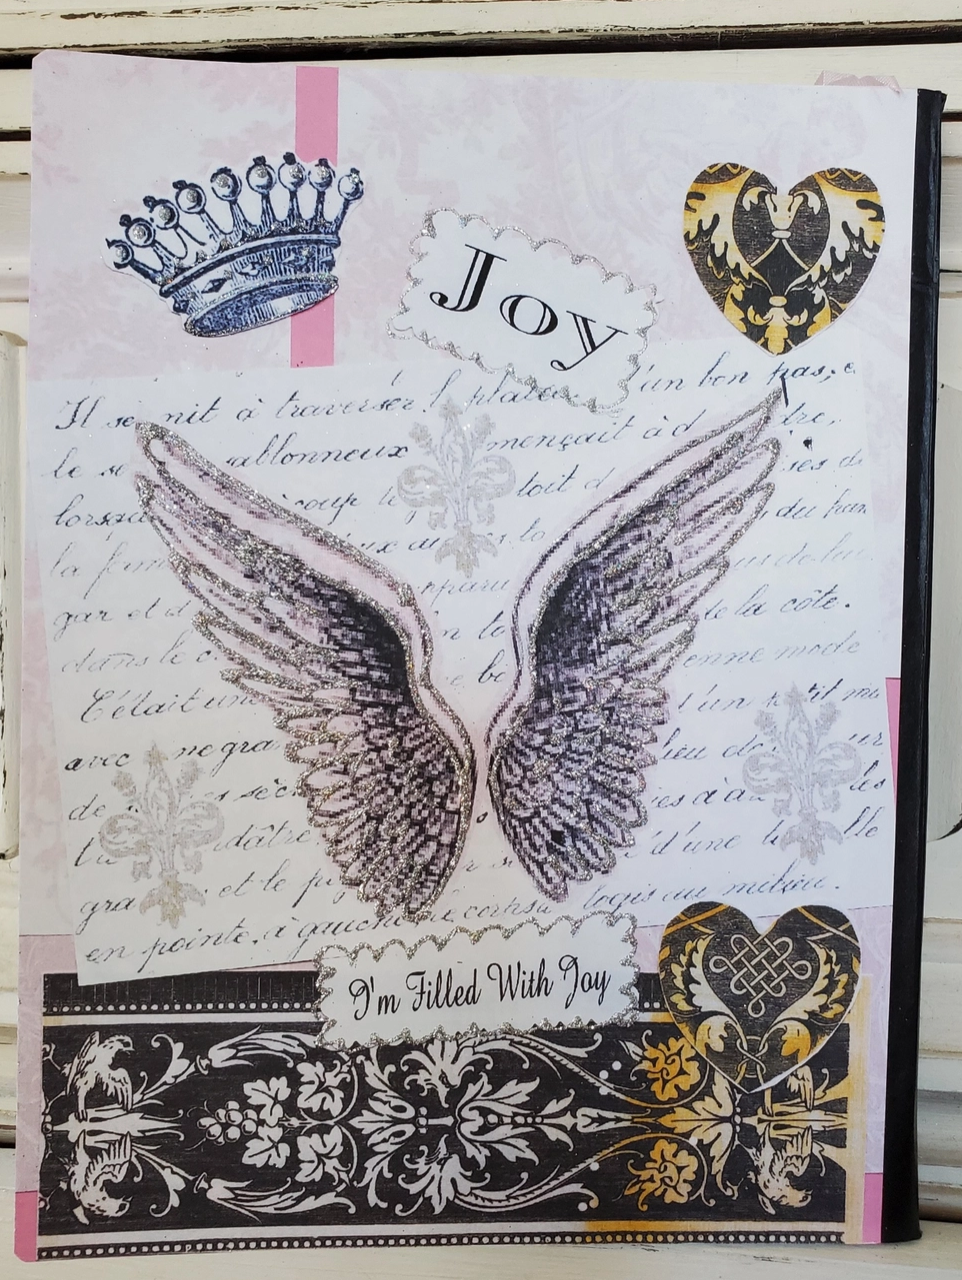 Love N Wings Journal